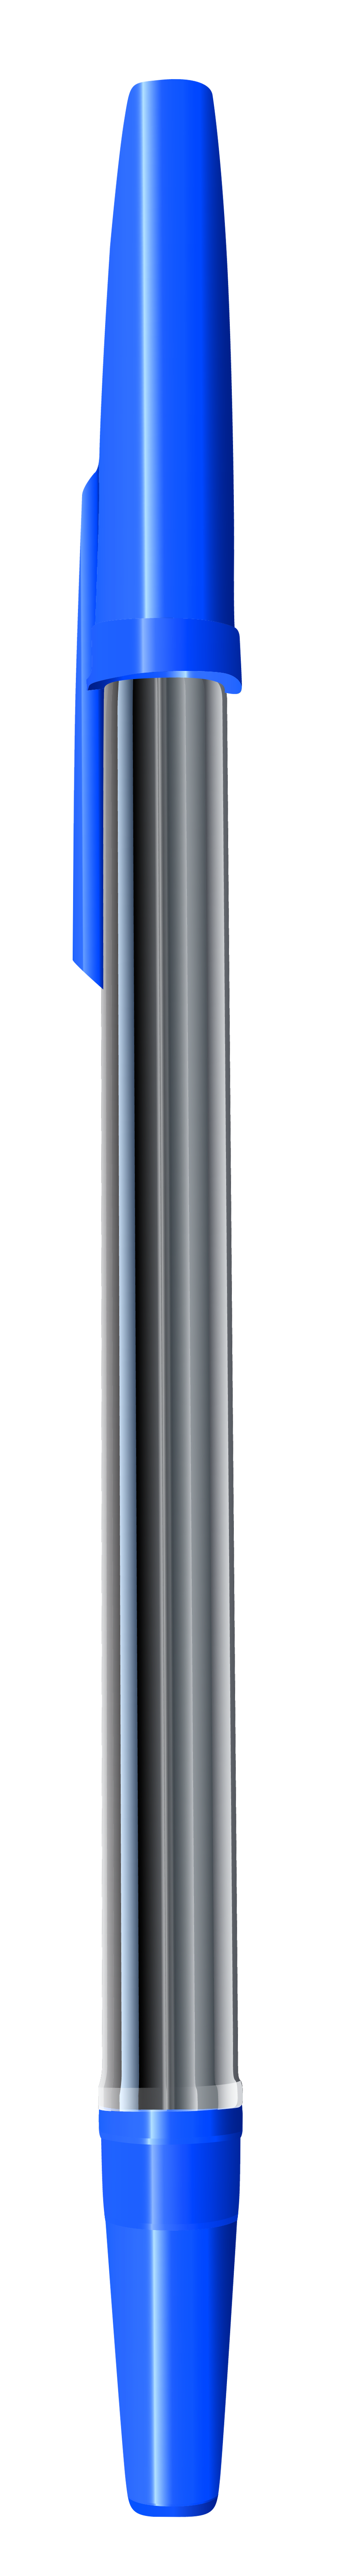 Blue Pen PNG Clipart Image